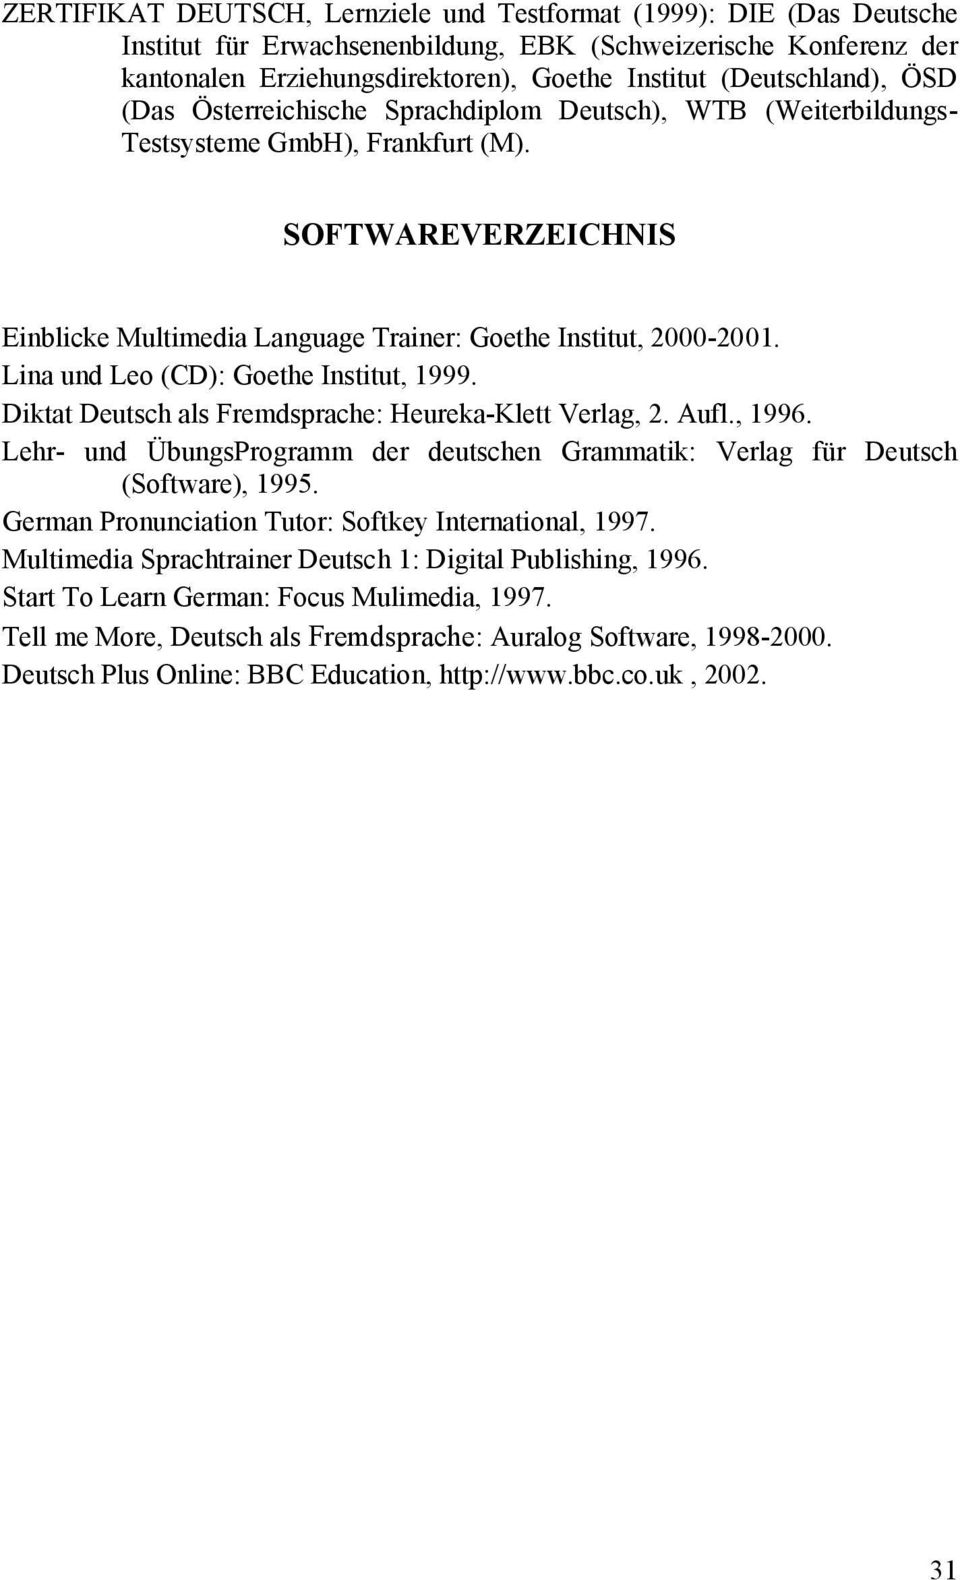 SOFTWAREVERZEICHNIS Einblicke Multimedia Language Trainer: Goethe Institut, 2000-2001. Lina und Leo (CD): Goethe Institut, 1999. Diktat Deutsch als Fremdsprache: Heureka-Klett Verlag, 2. Aufl., 1996.